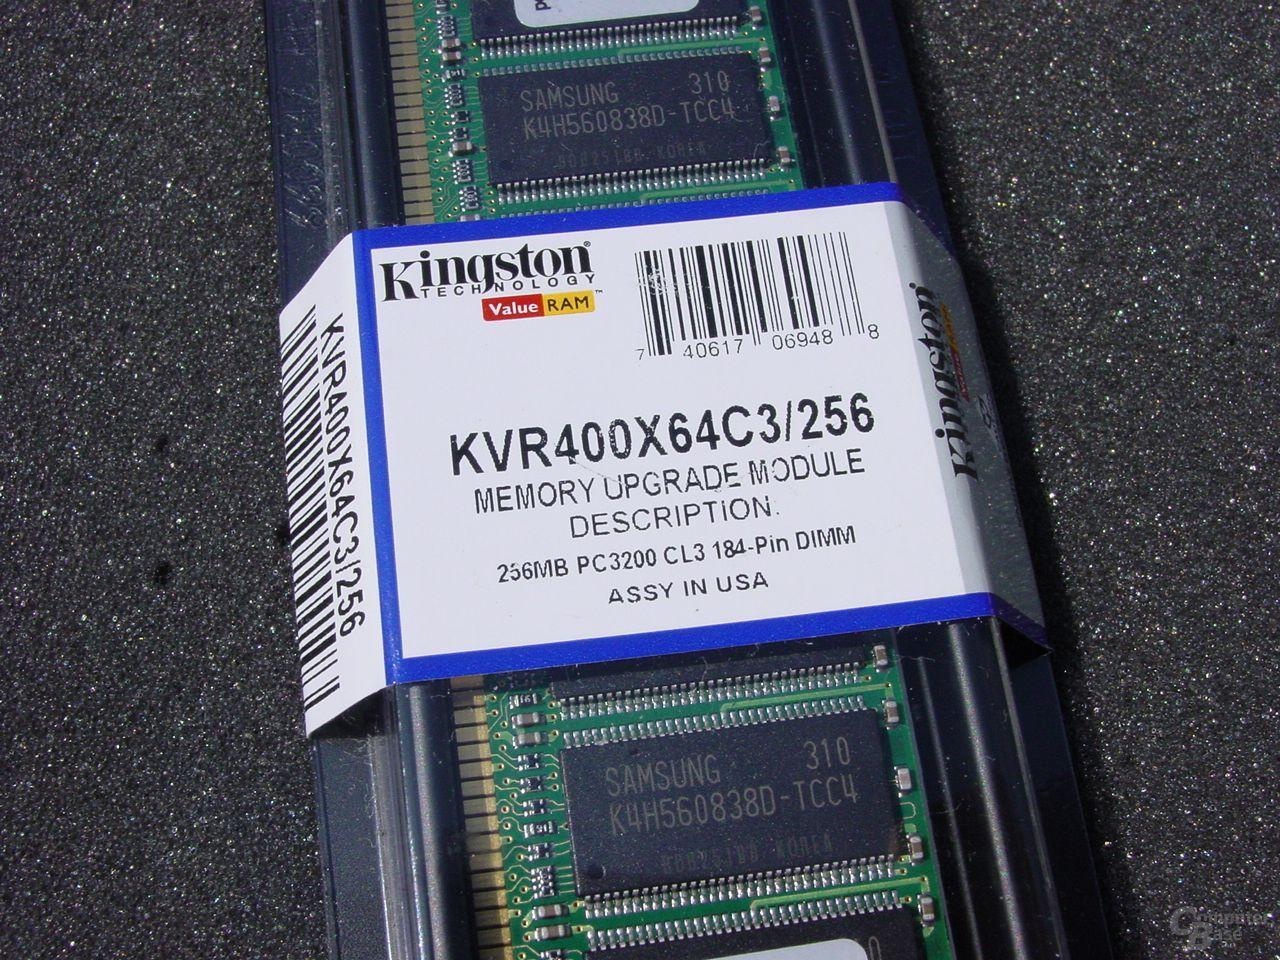 Kingston ValueRAM DDR400